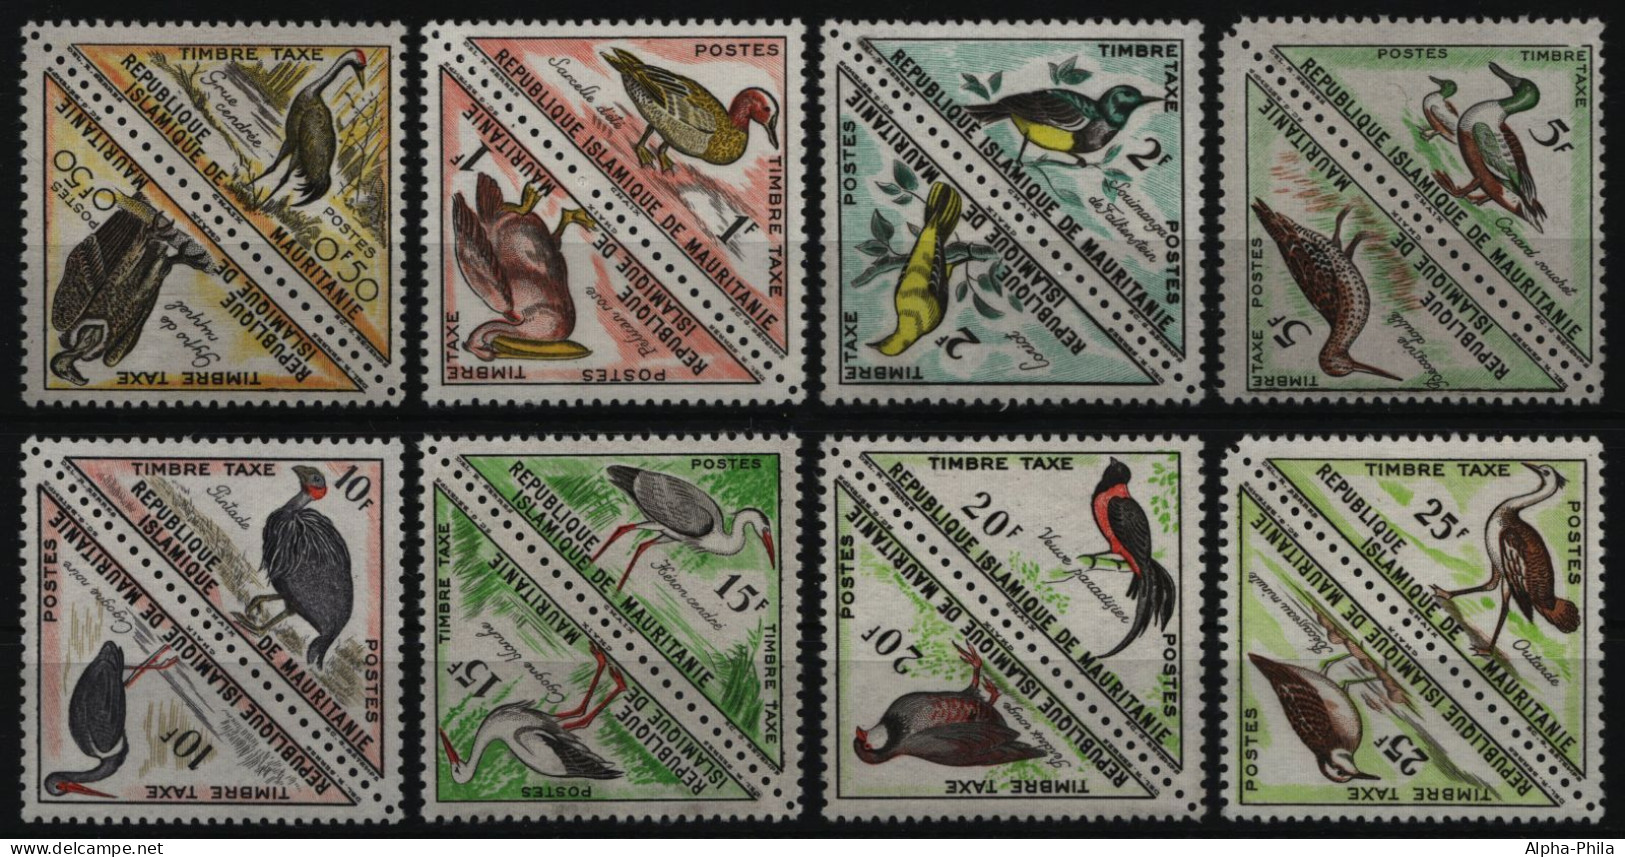 Mauretanien 1963 - Porto - Mi-Nr. 26-41 ** - MNH - Vögel / Birds - Mauritania (1960-...)